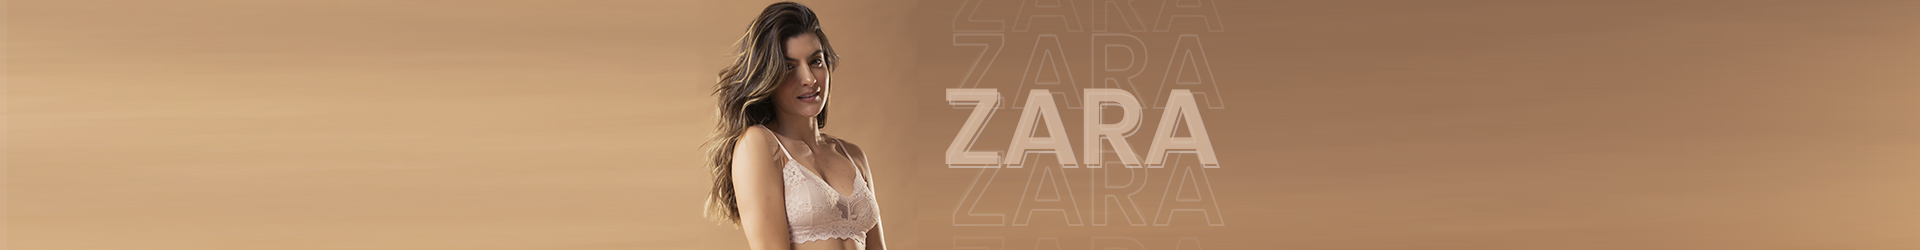 Banner Zara - Produtos Específicos